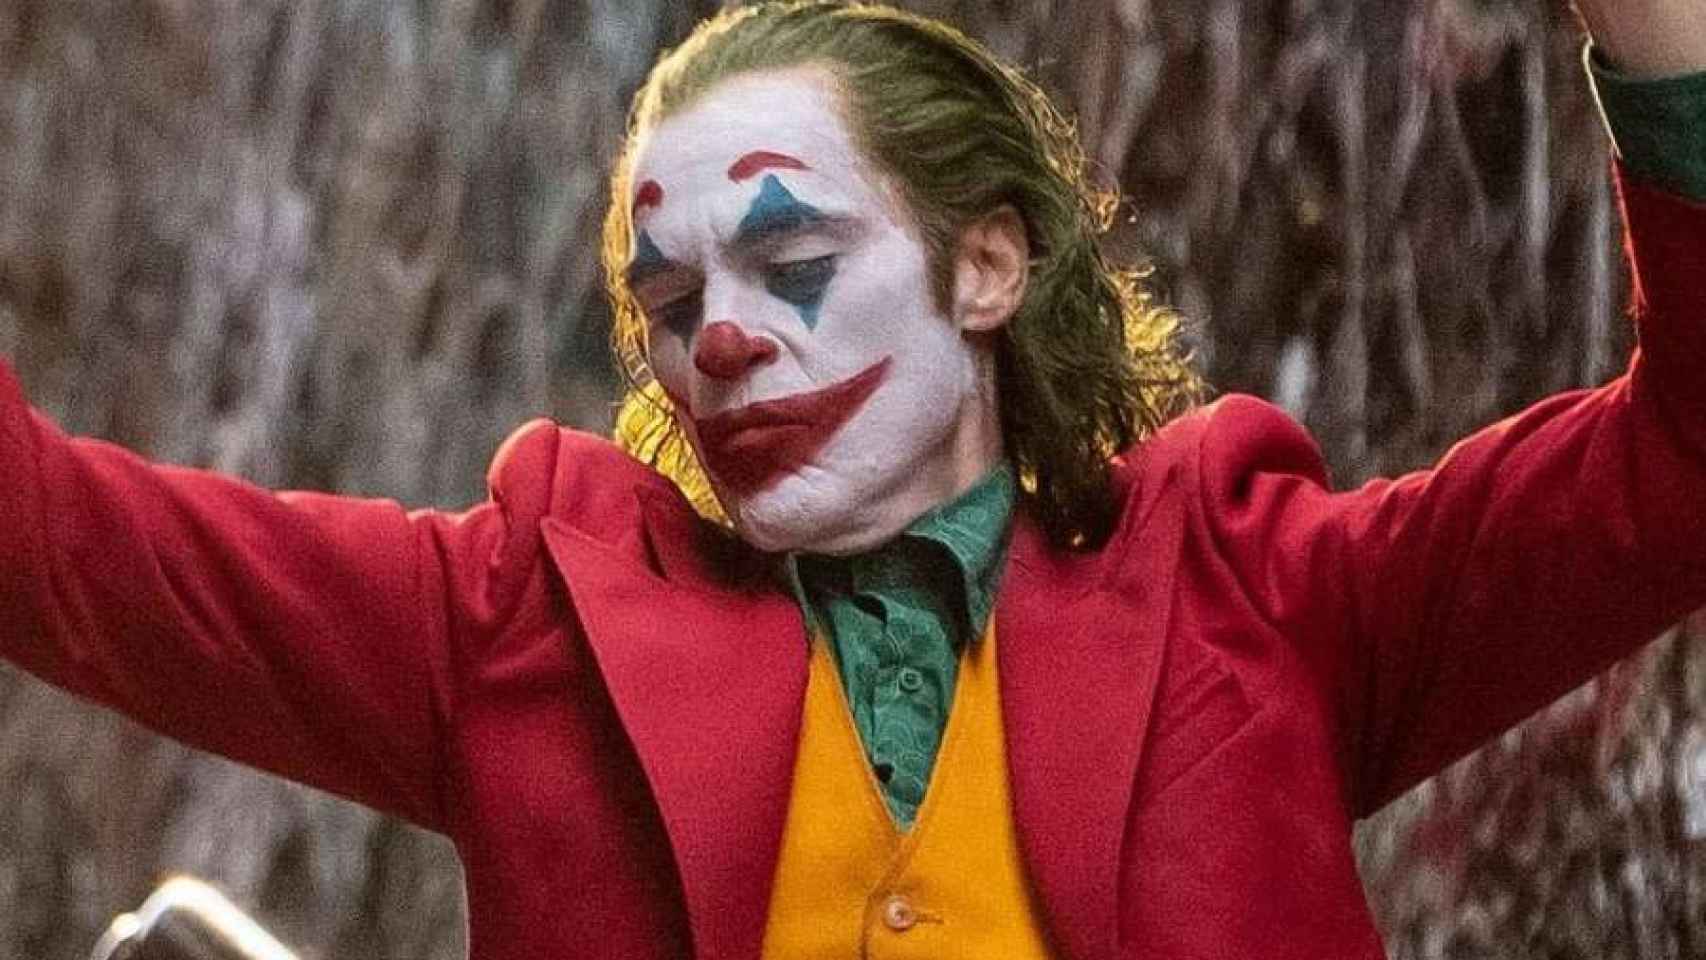 Por qué todo el habla del Joker? Las claves del de la película más del año